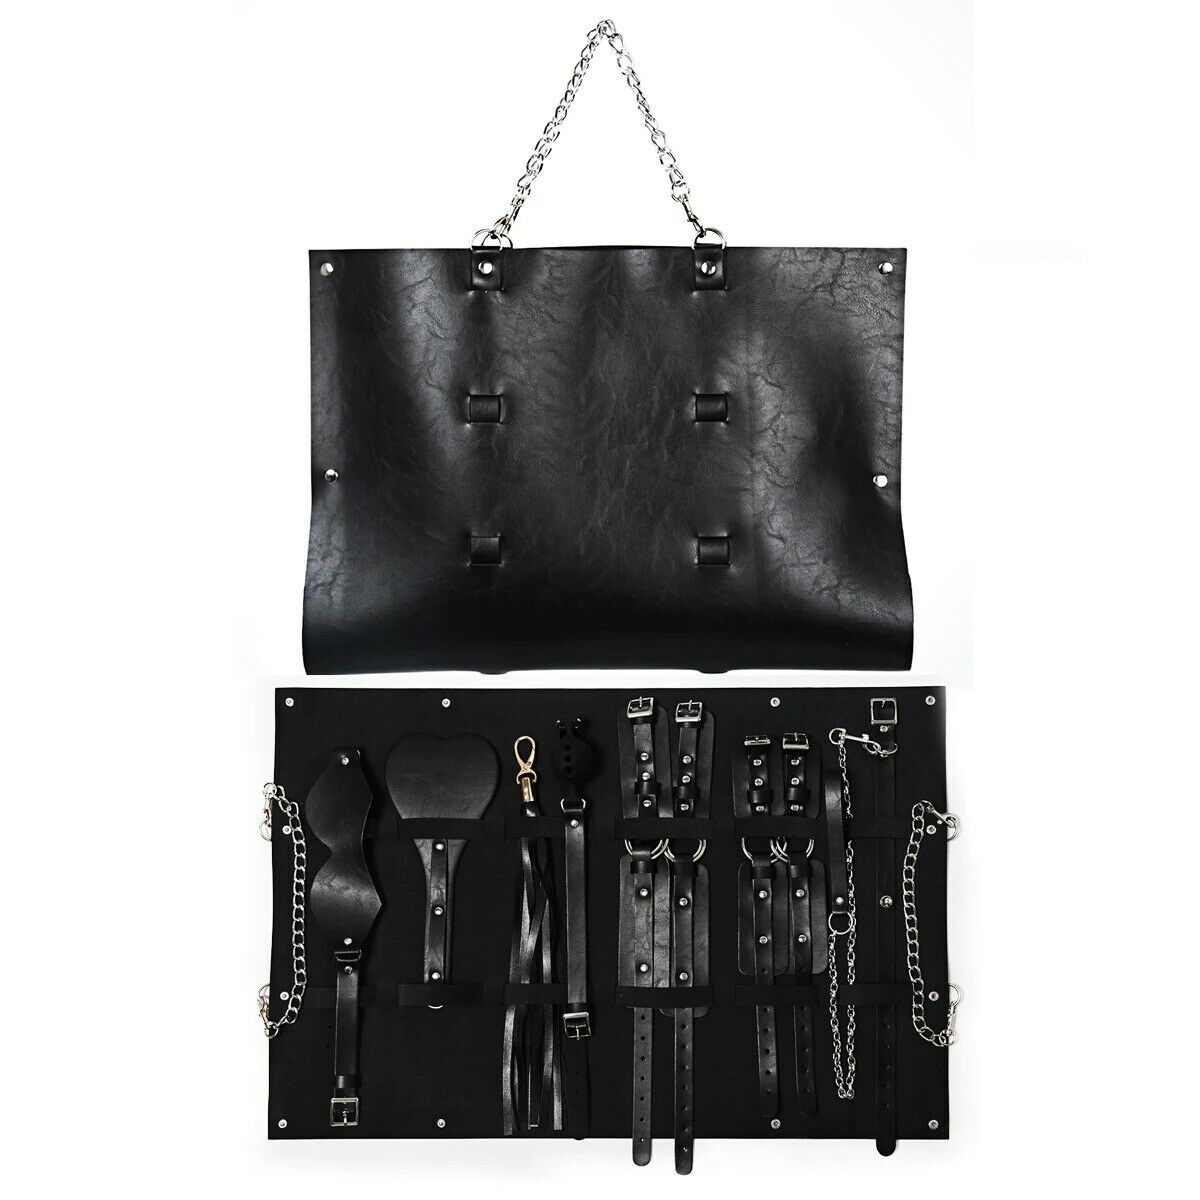 БДСМ набор KISSEXPO в кожаной сумке черный 7 предметов